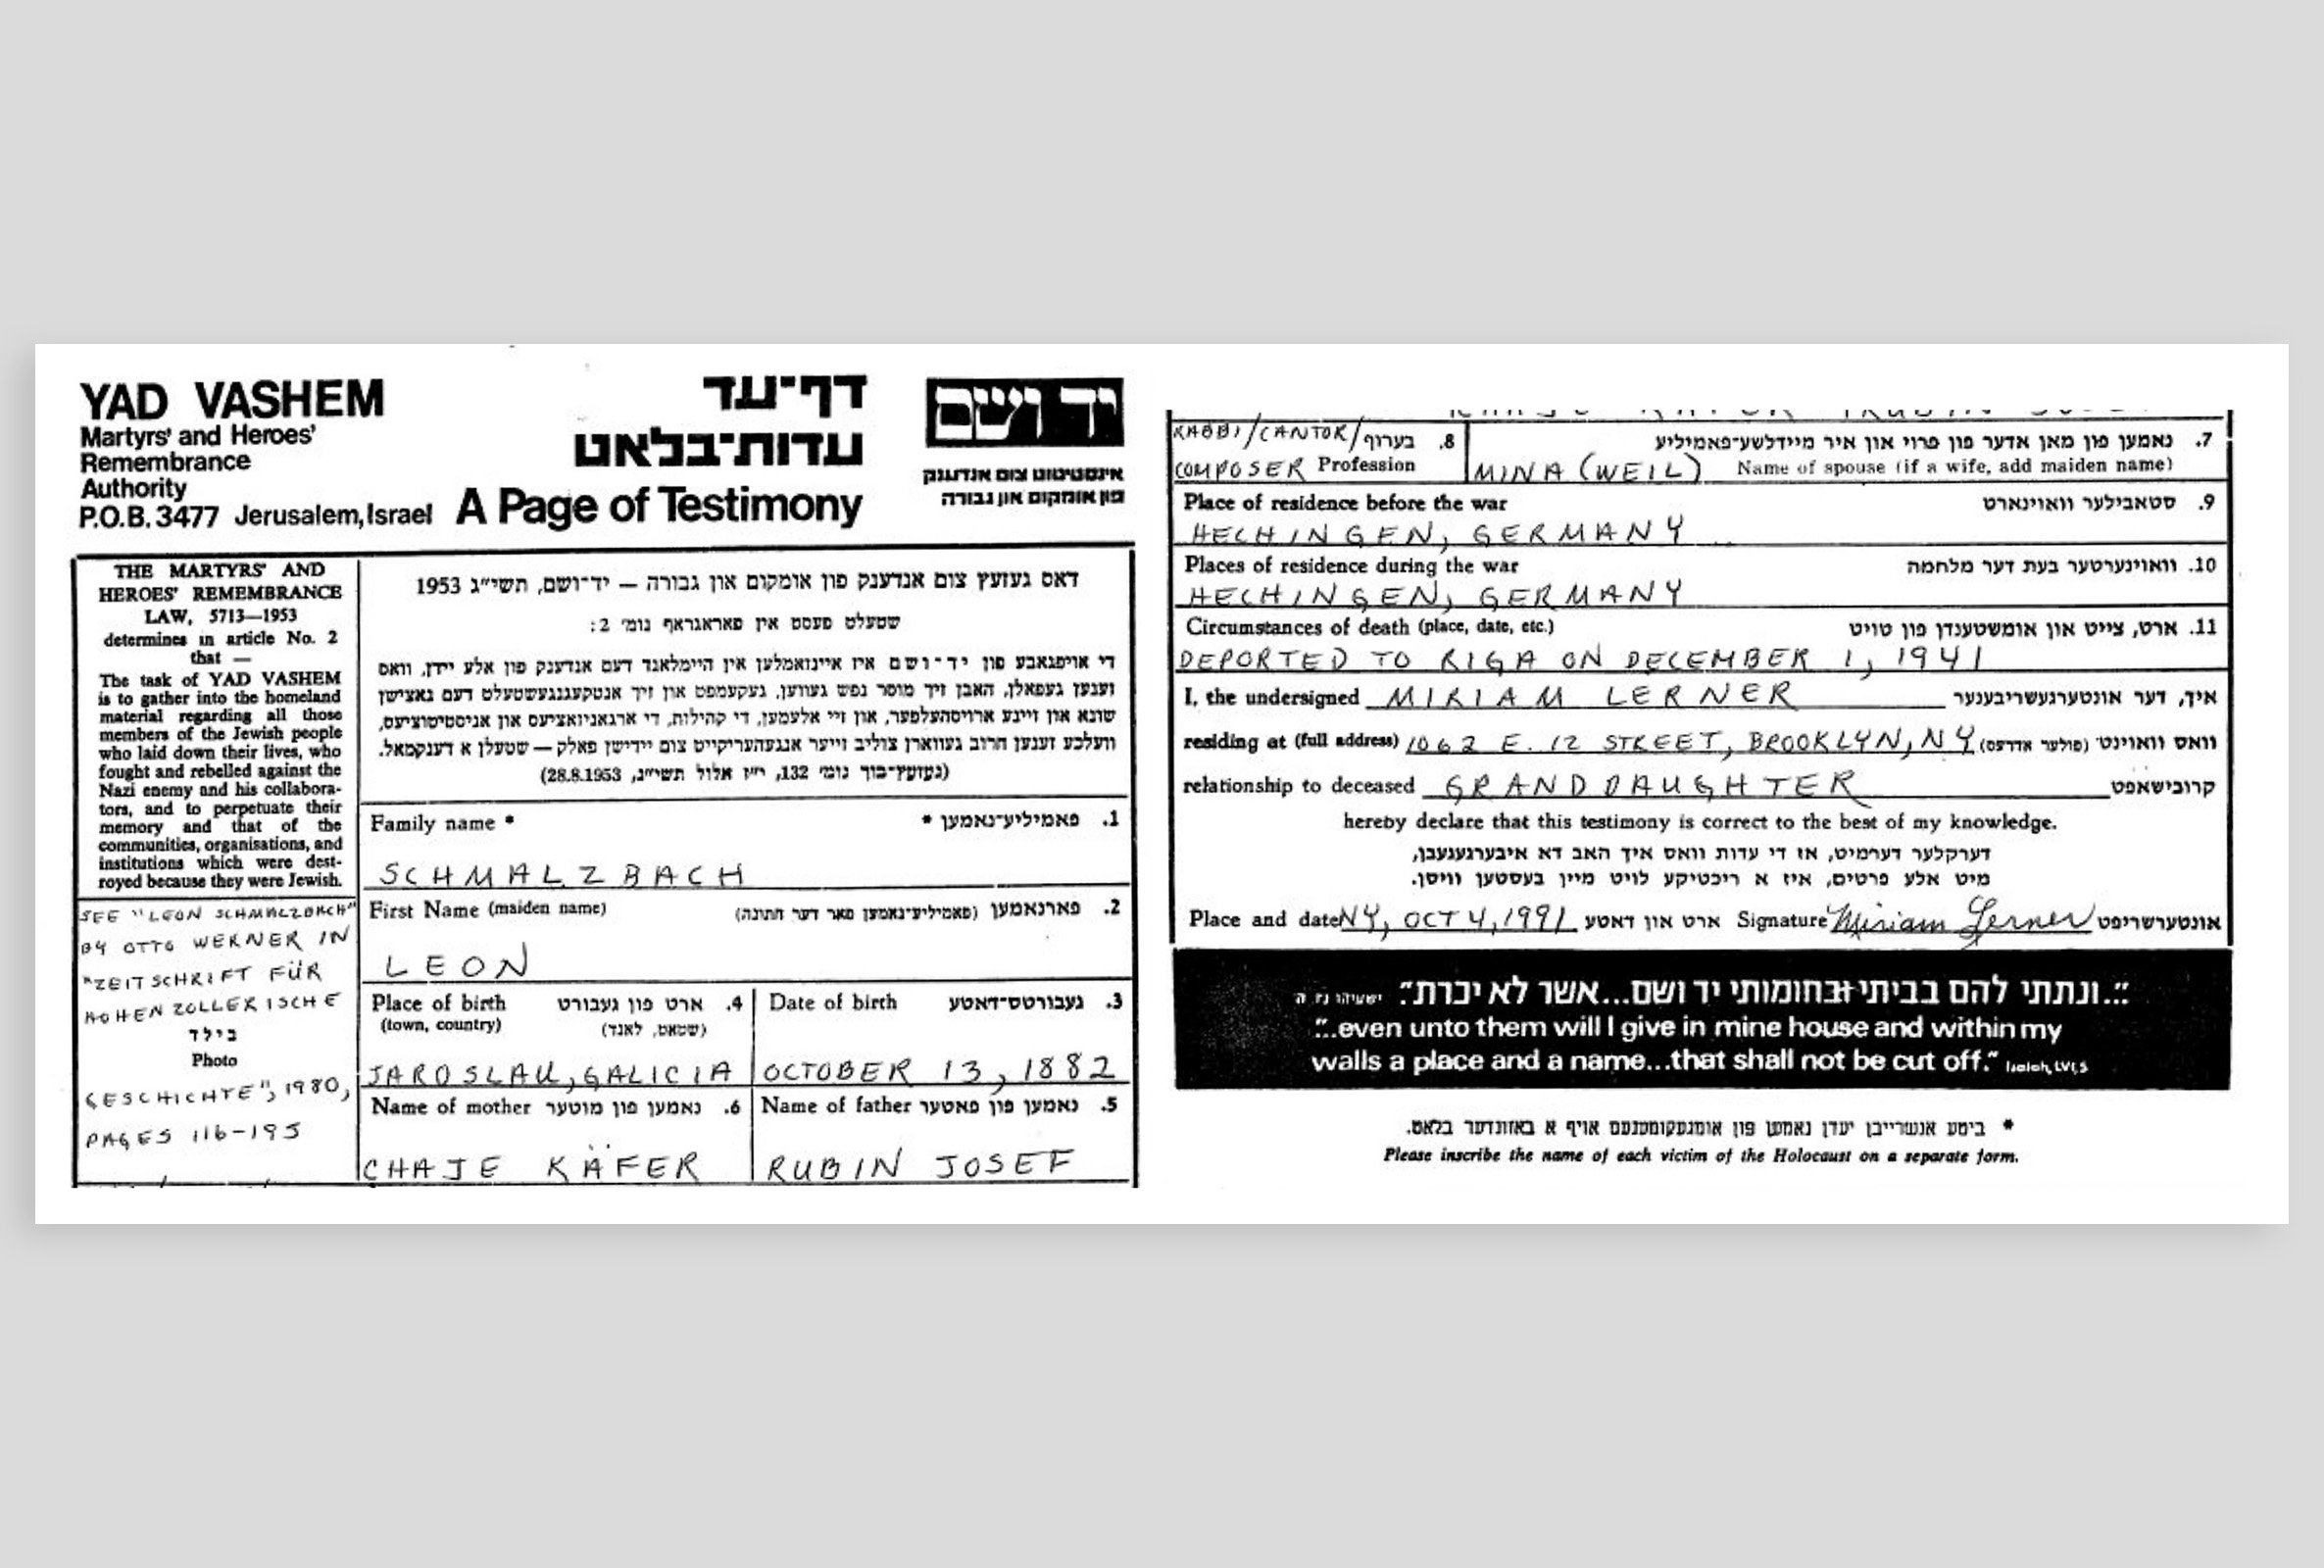 Yad Vashem page of testimony for Leon Schmalzbach.